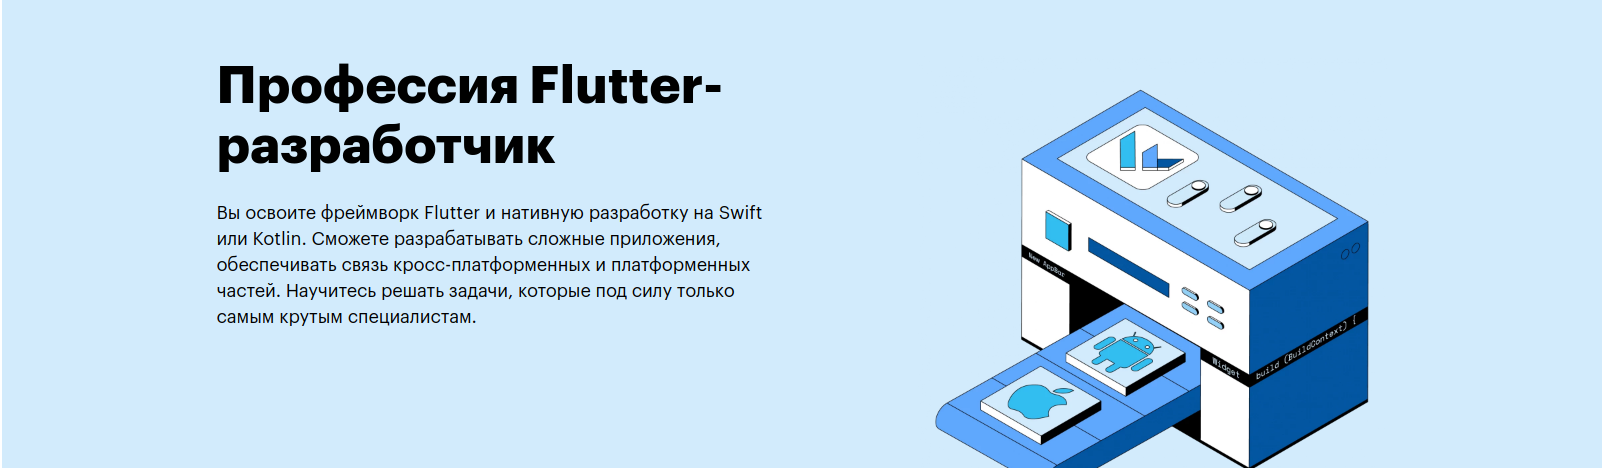 Профессия Flutter-разработчик от Skillbox